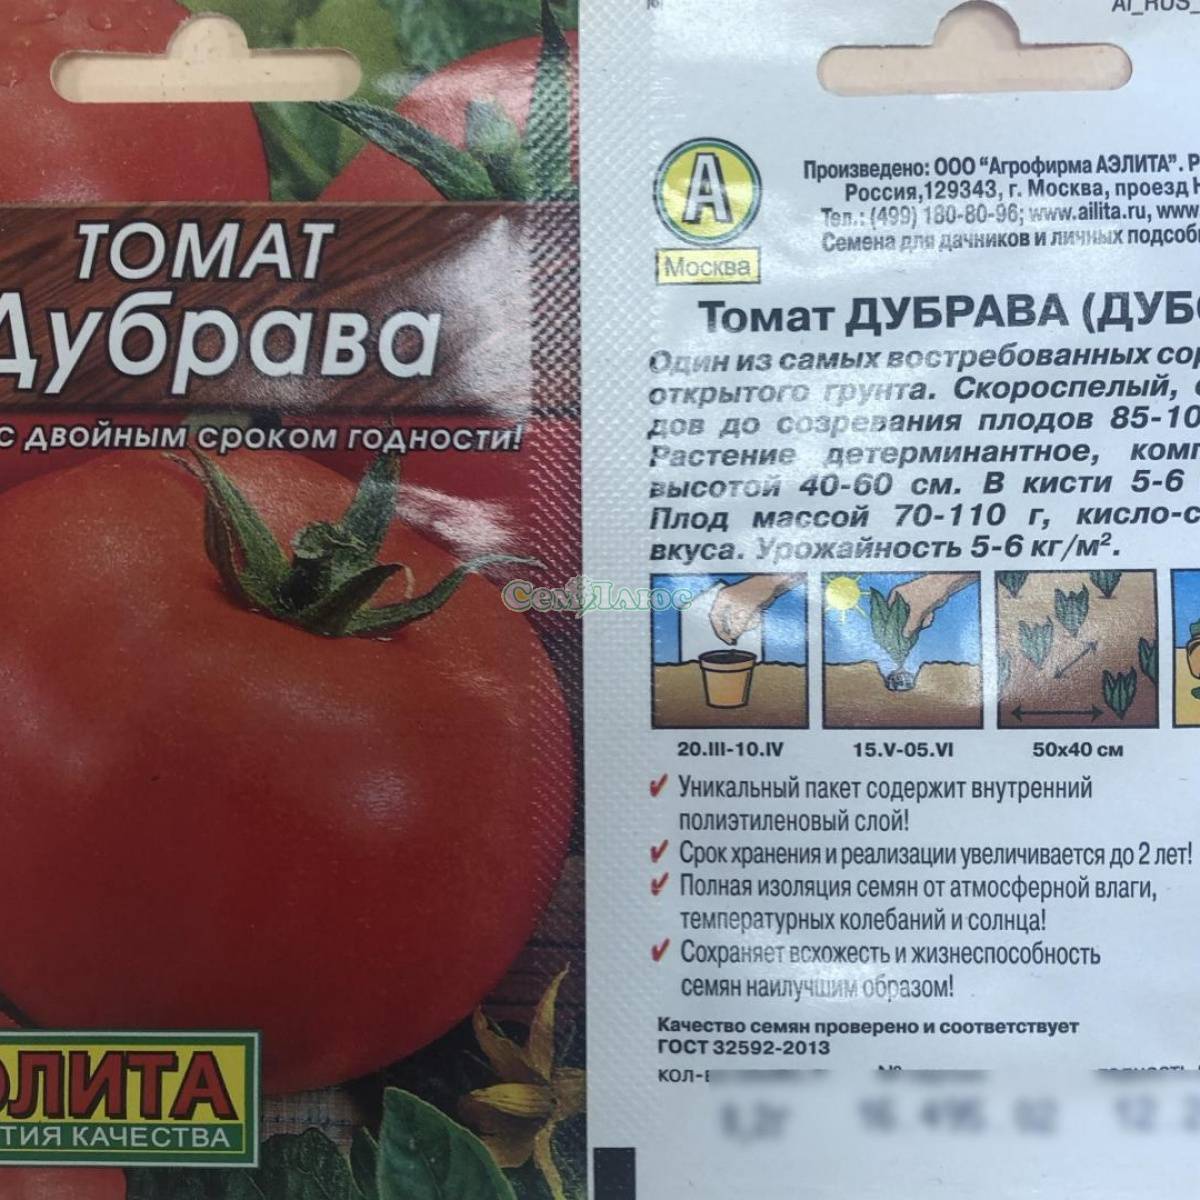 Томат дубрава: описание сорта, отзывы (18), фото, урожайность | tomatland.ru